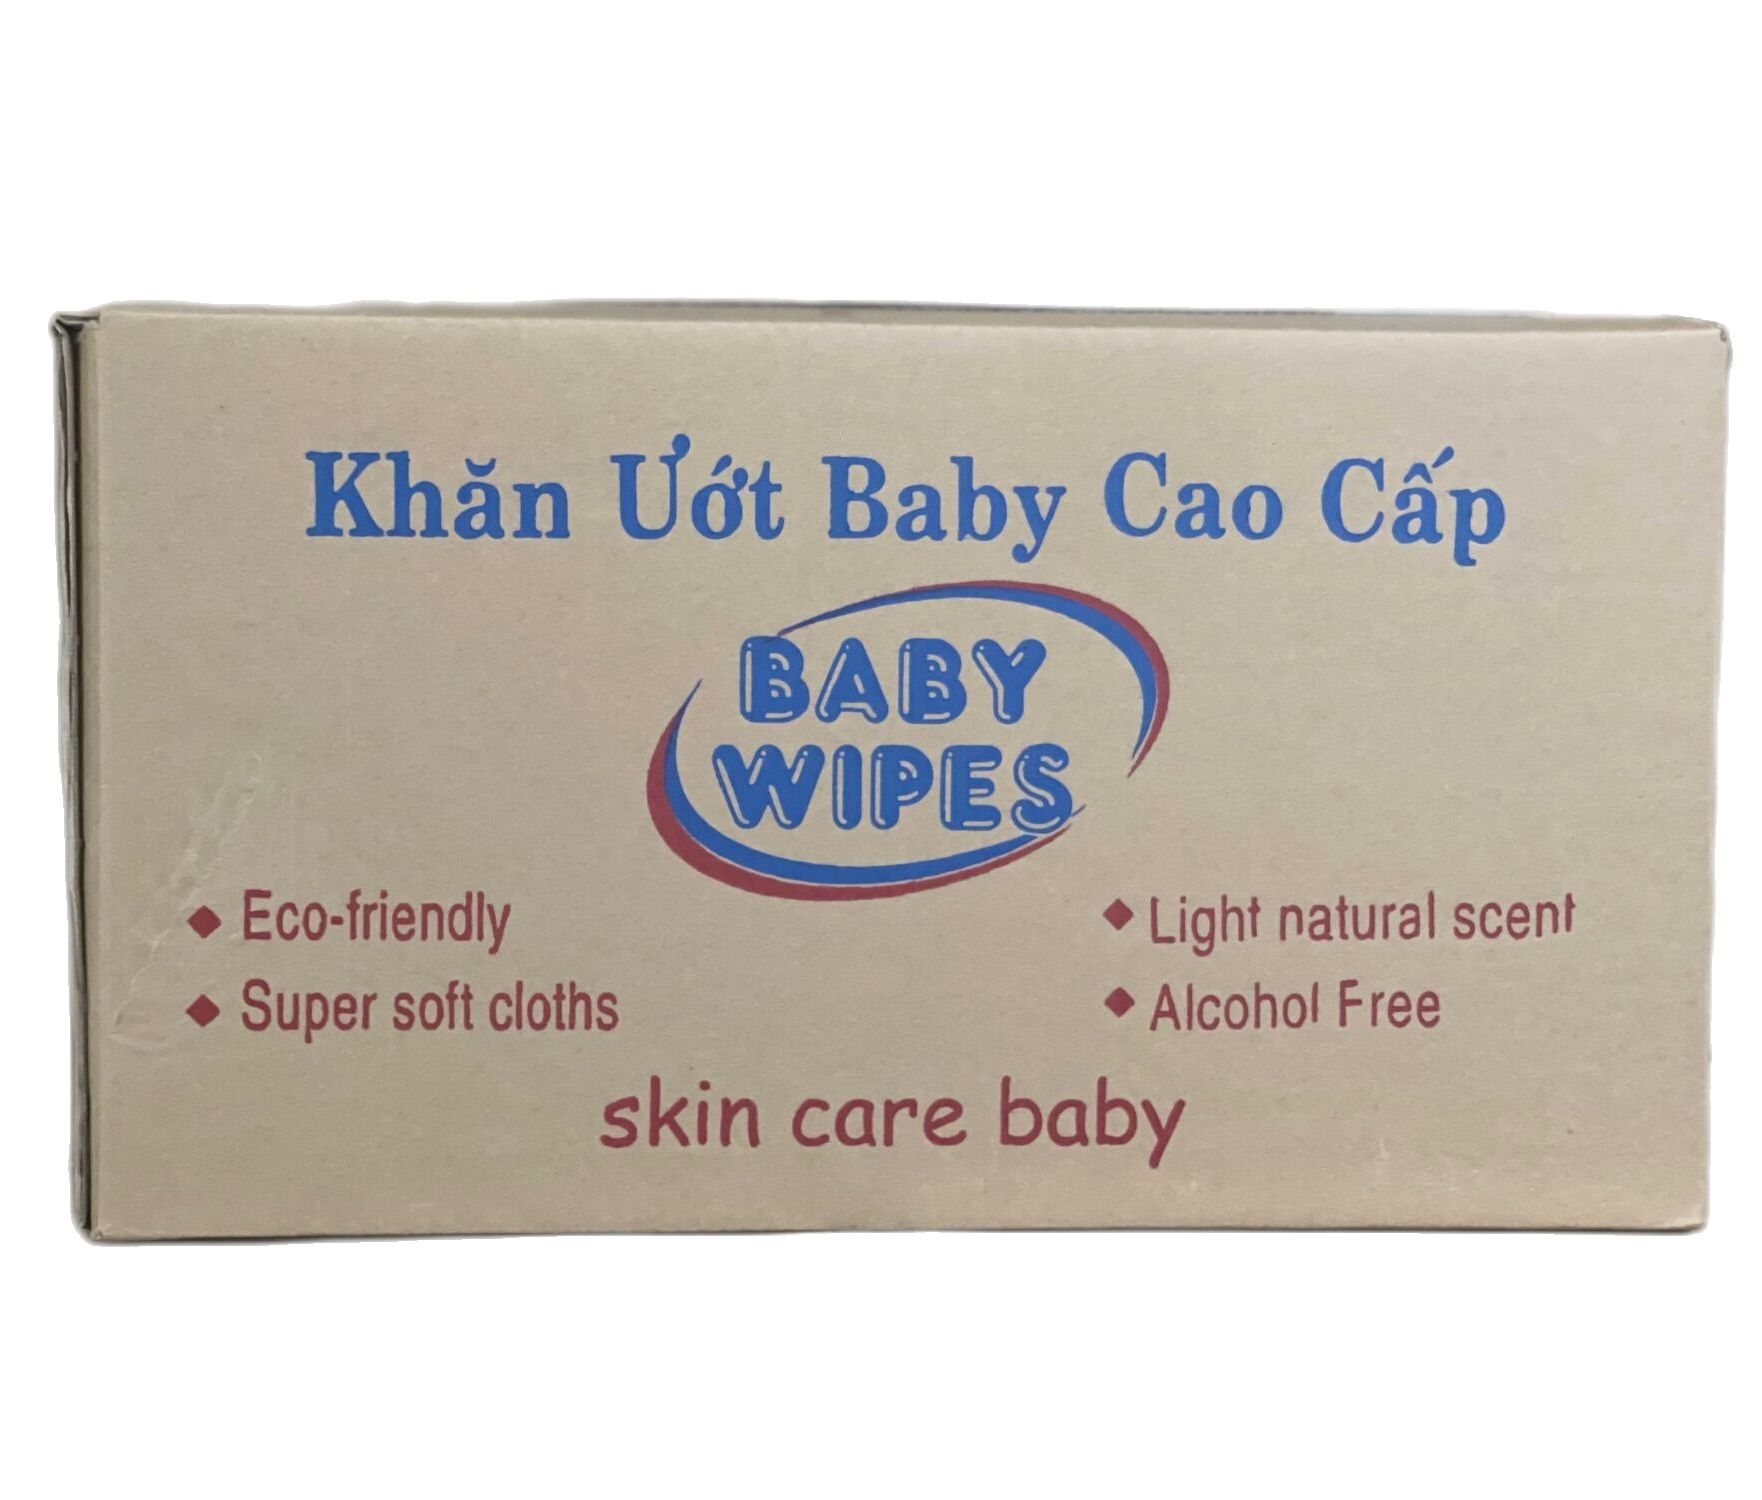 Giá Sỉ 1 thùng khăn giấy ướt em bé baby wiper 80gr  50 cục - An toàn cho bé thumbnail